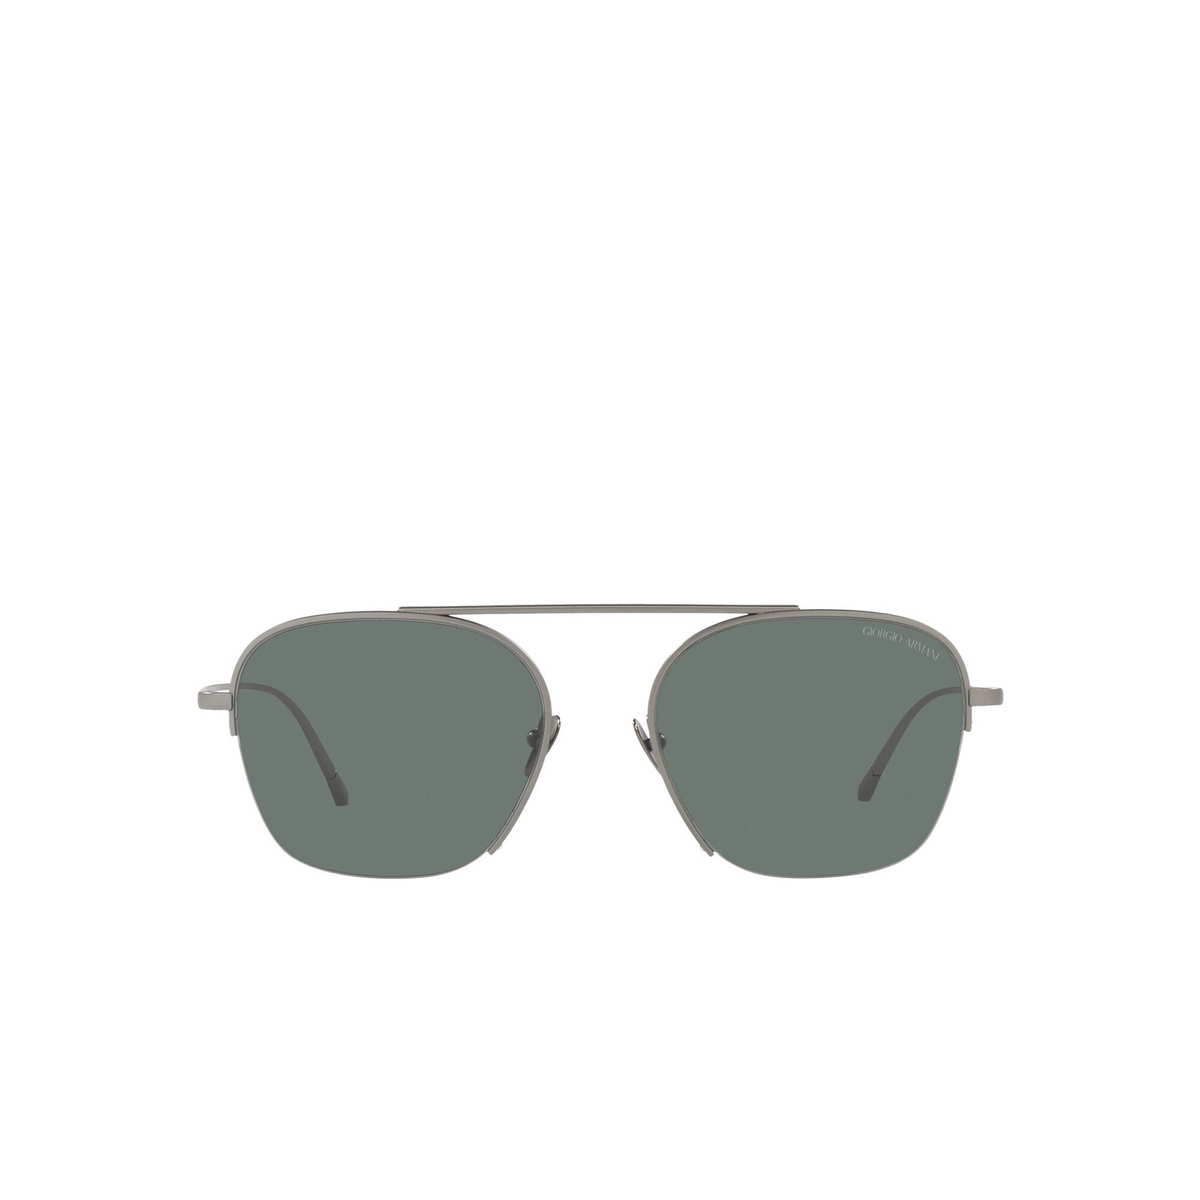 Giorgio Armani® Square Sunglasses: AR6124 color Matte Gunmetal 300311 - front view.